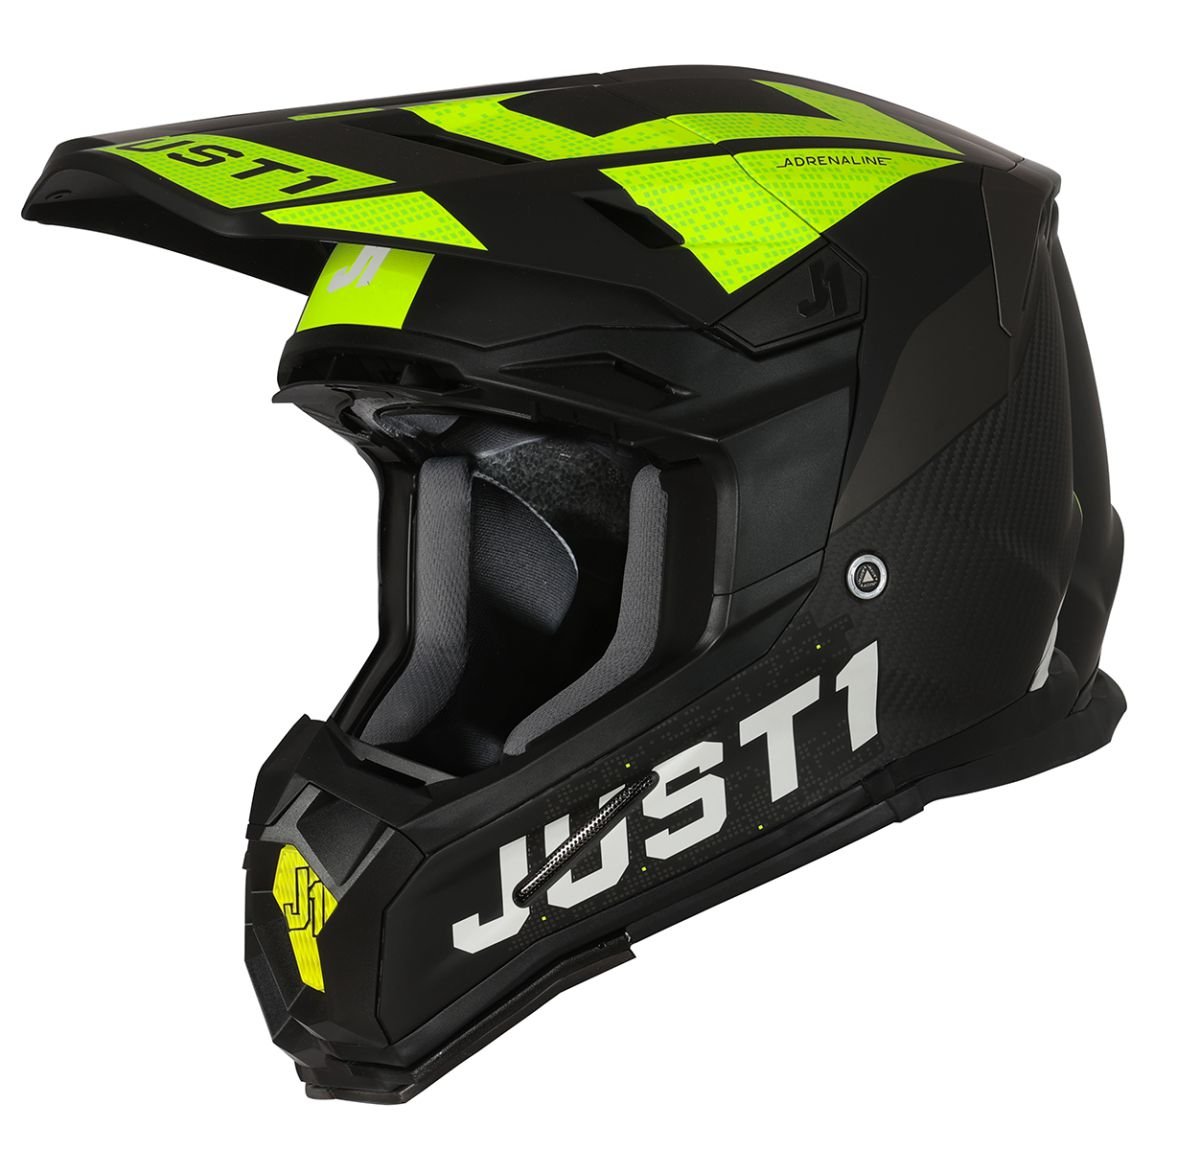 Image of Just1 Helmet J-22 Adrenaline Black Yellow Fluo Carbon Matt Offroad Helmet Size XL EN